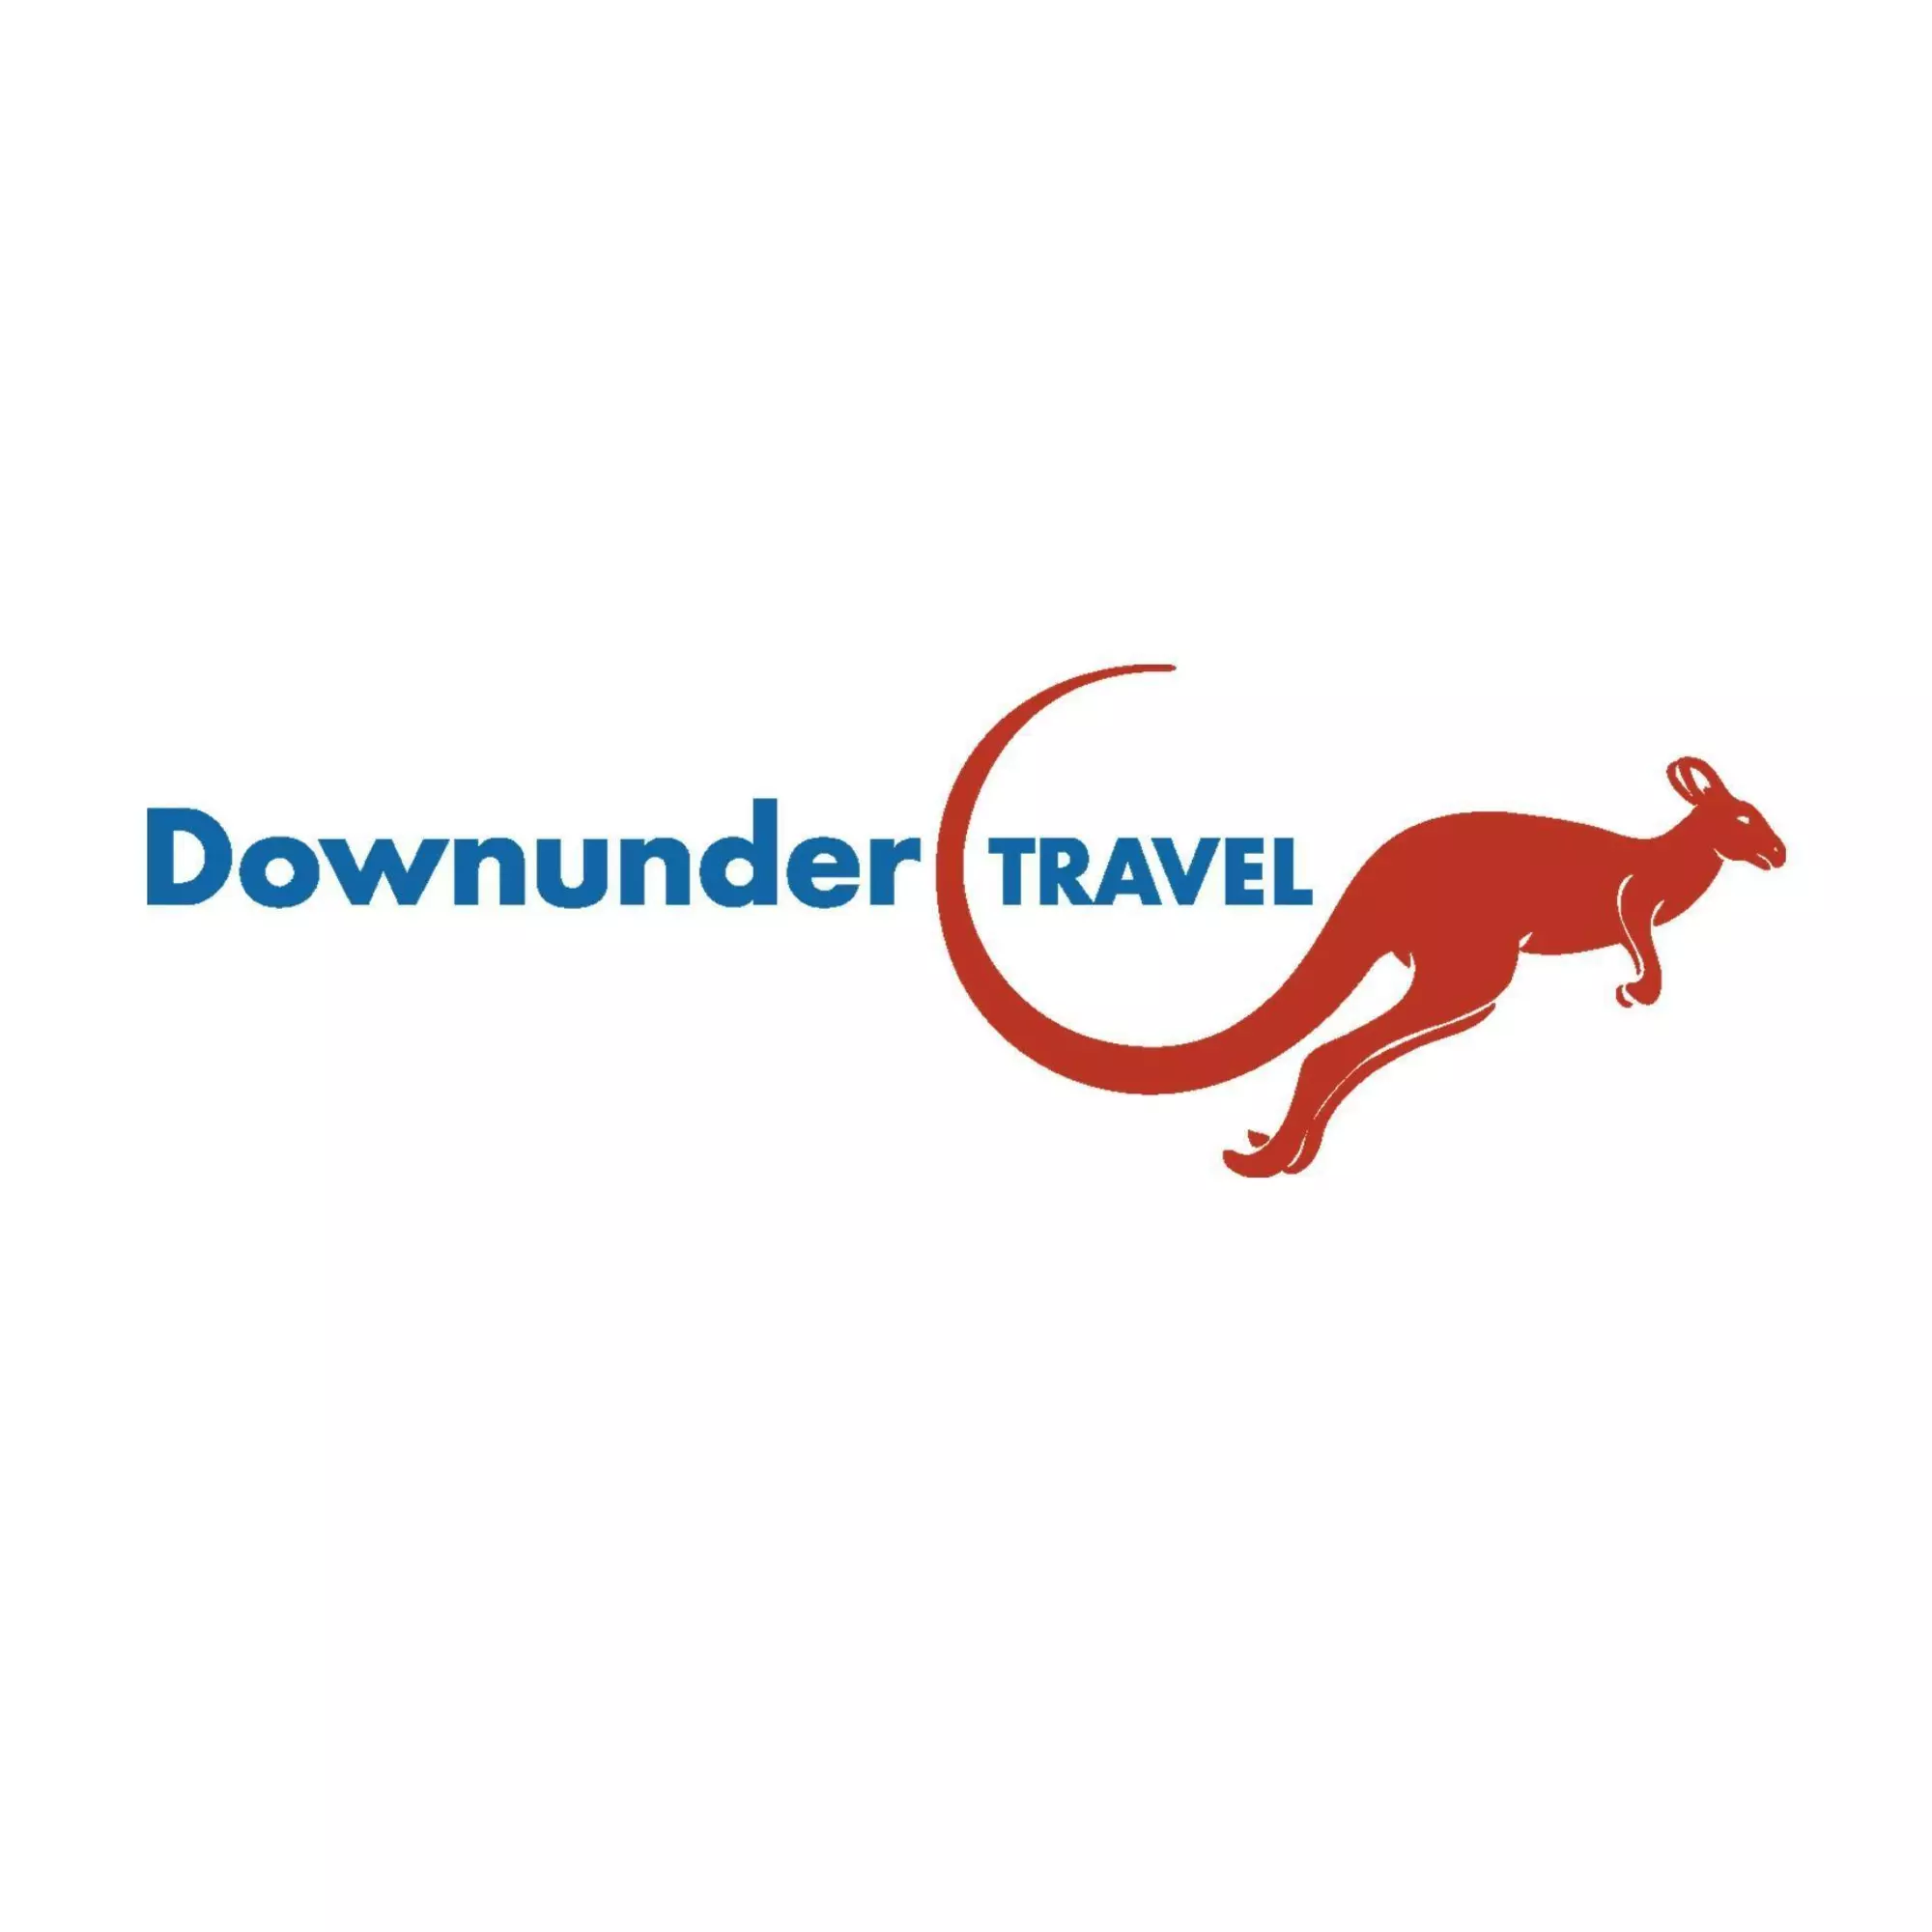 Downunder travel.jpg